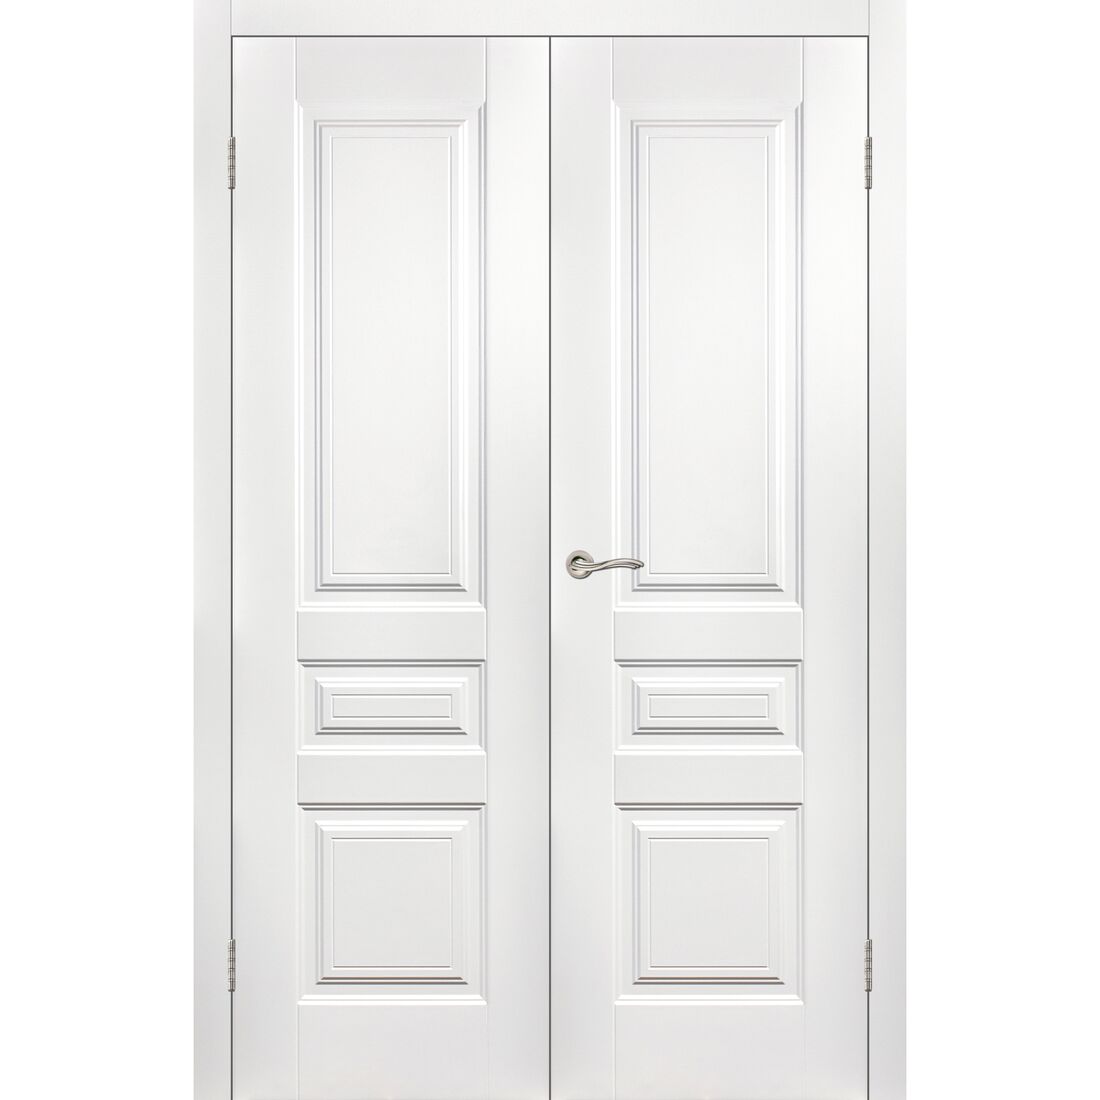 Межкомнатная дверь 600х2000. Лондон дверь 600+600 мм белая эмаль. Дверь межкомнатная 600х2000 белая. S-1 двери эмаль. Дверь скин 2 эмаль белая.